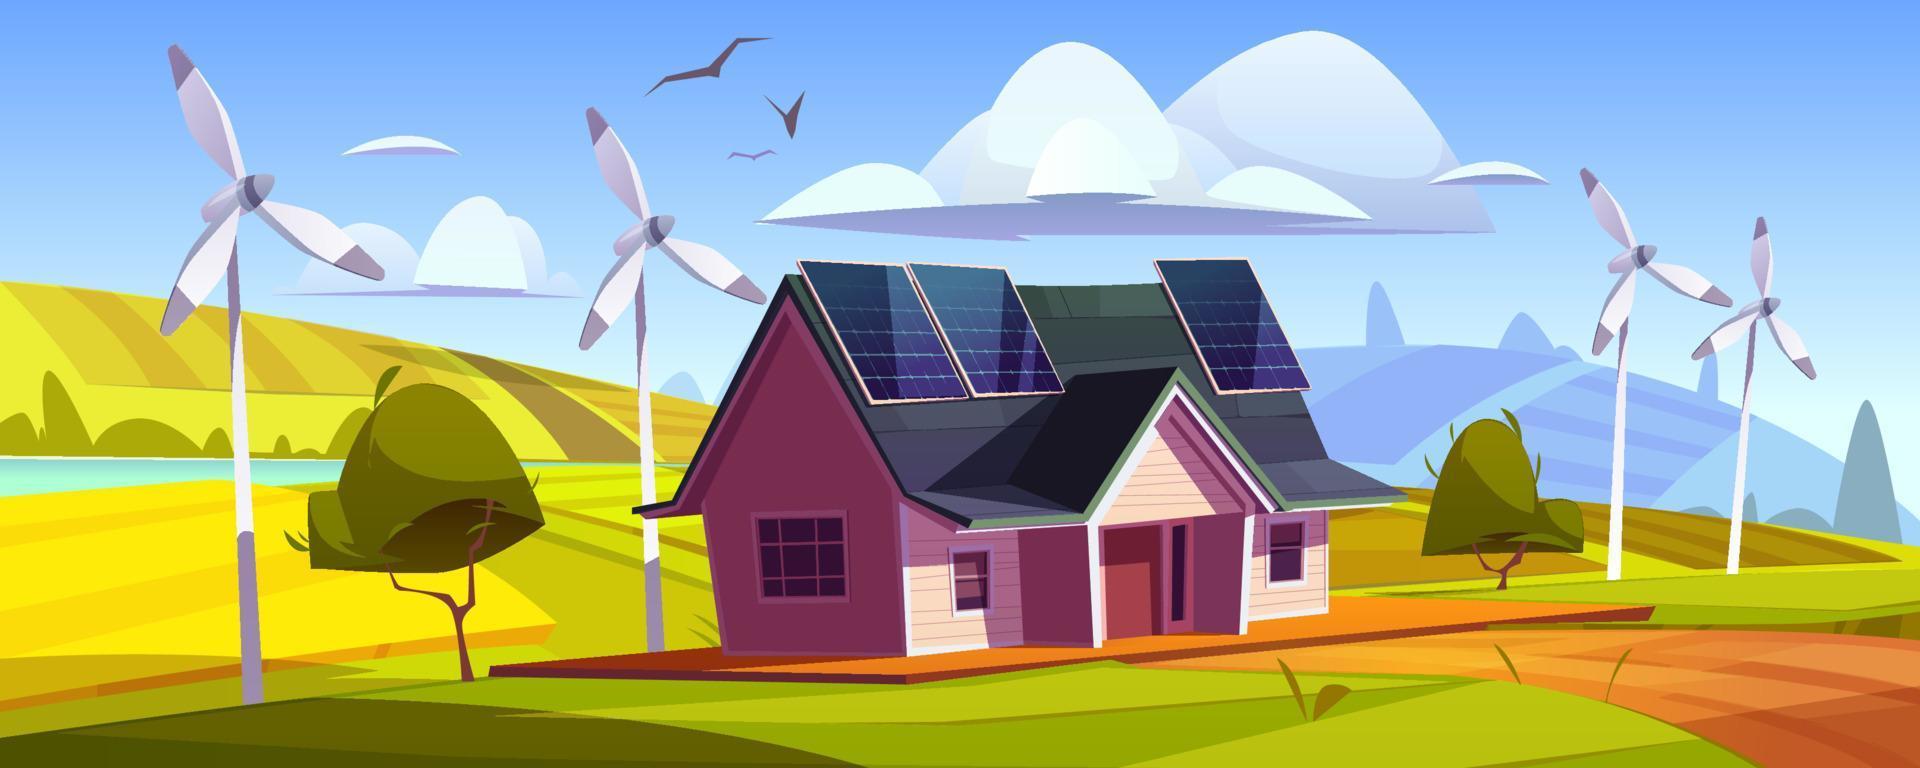 Casa con solare pannelli su tetto e vento turbine vettore